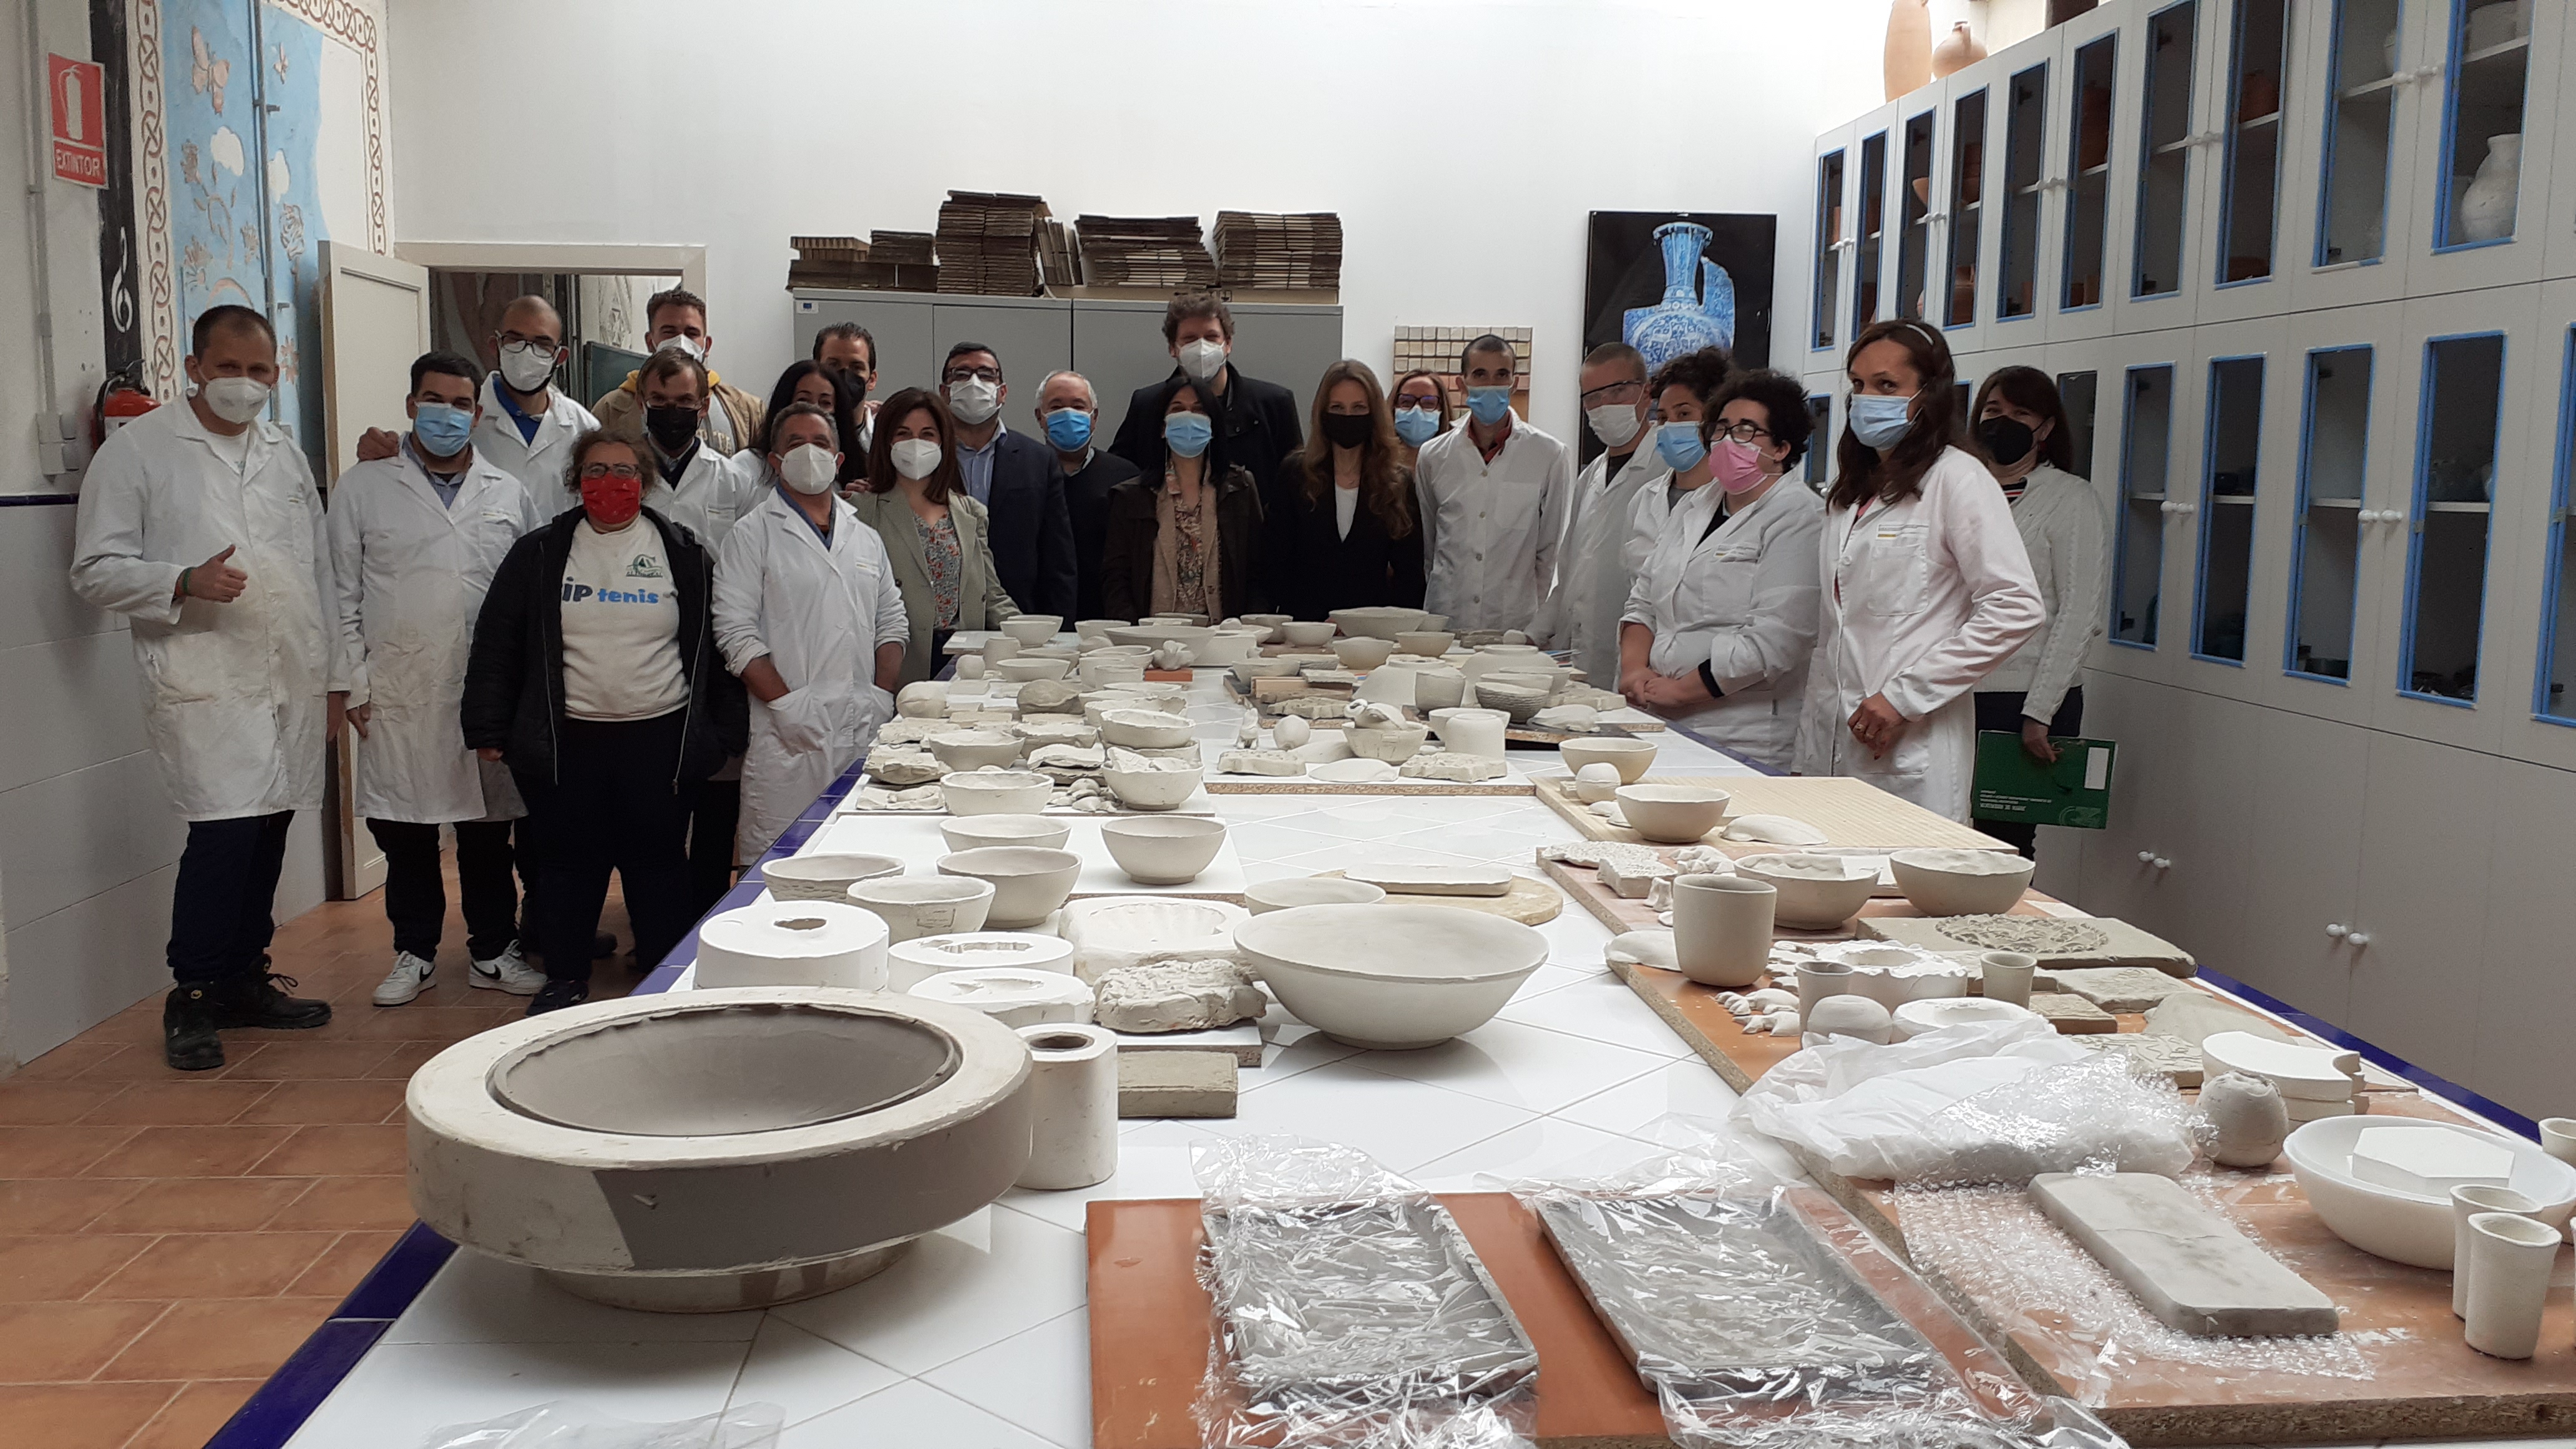 Junta, el CRN de Artesanía de Granada y entidades sociales promueven un programa de empleo pionero en artesanía inclusiva